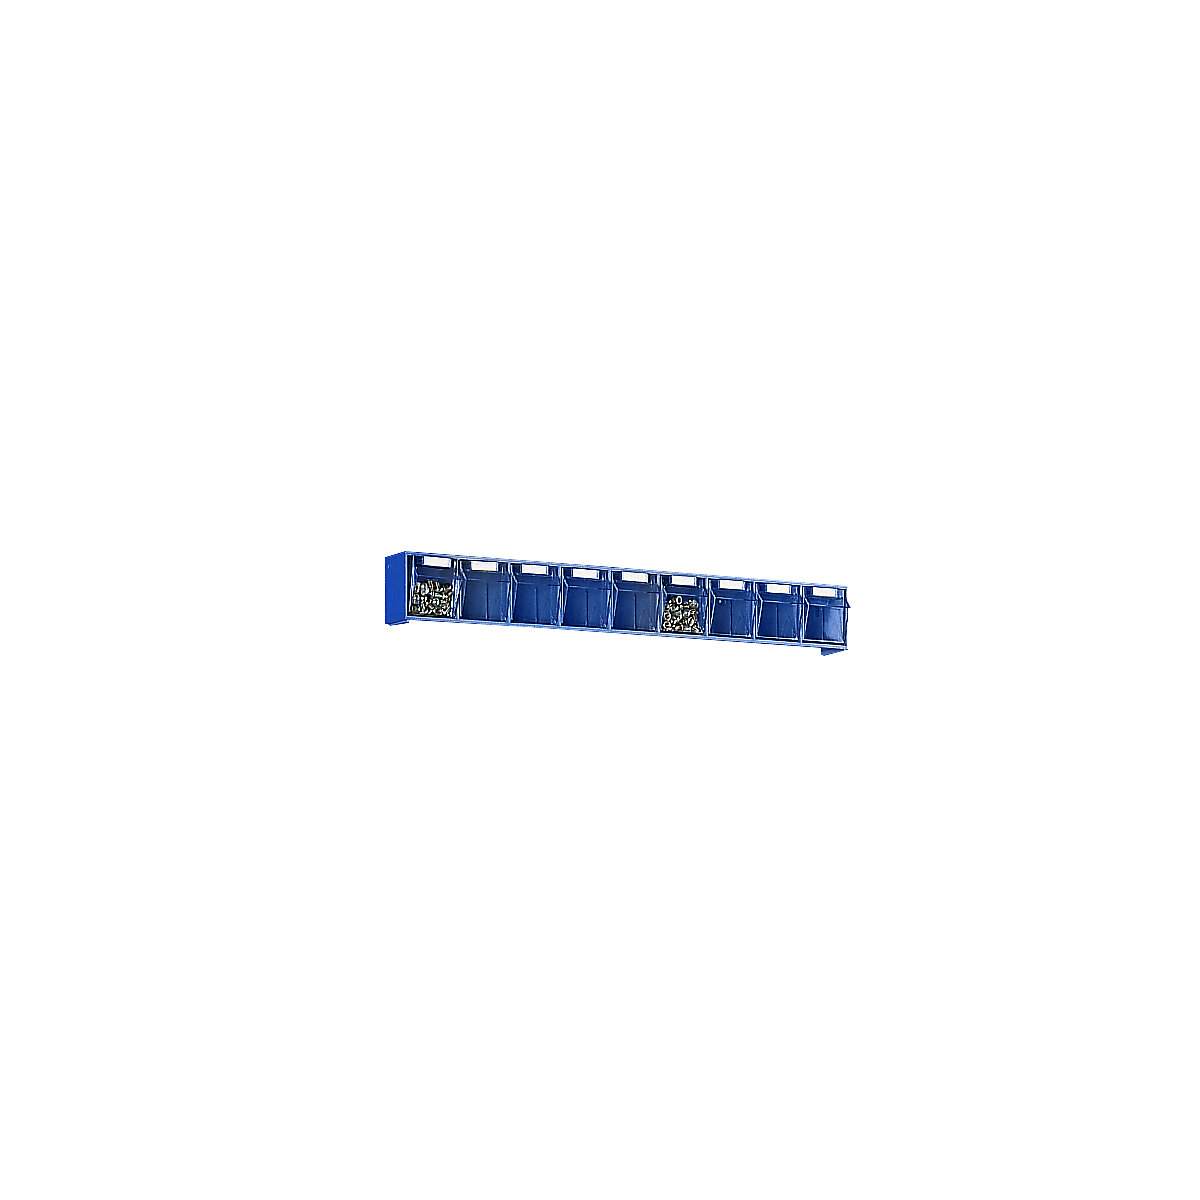 Système de bacs pivotants, casier h x l x p 77 x 600 x 62 mm, 9 bacs bleus, 10 pièces et +-7